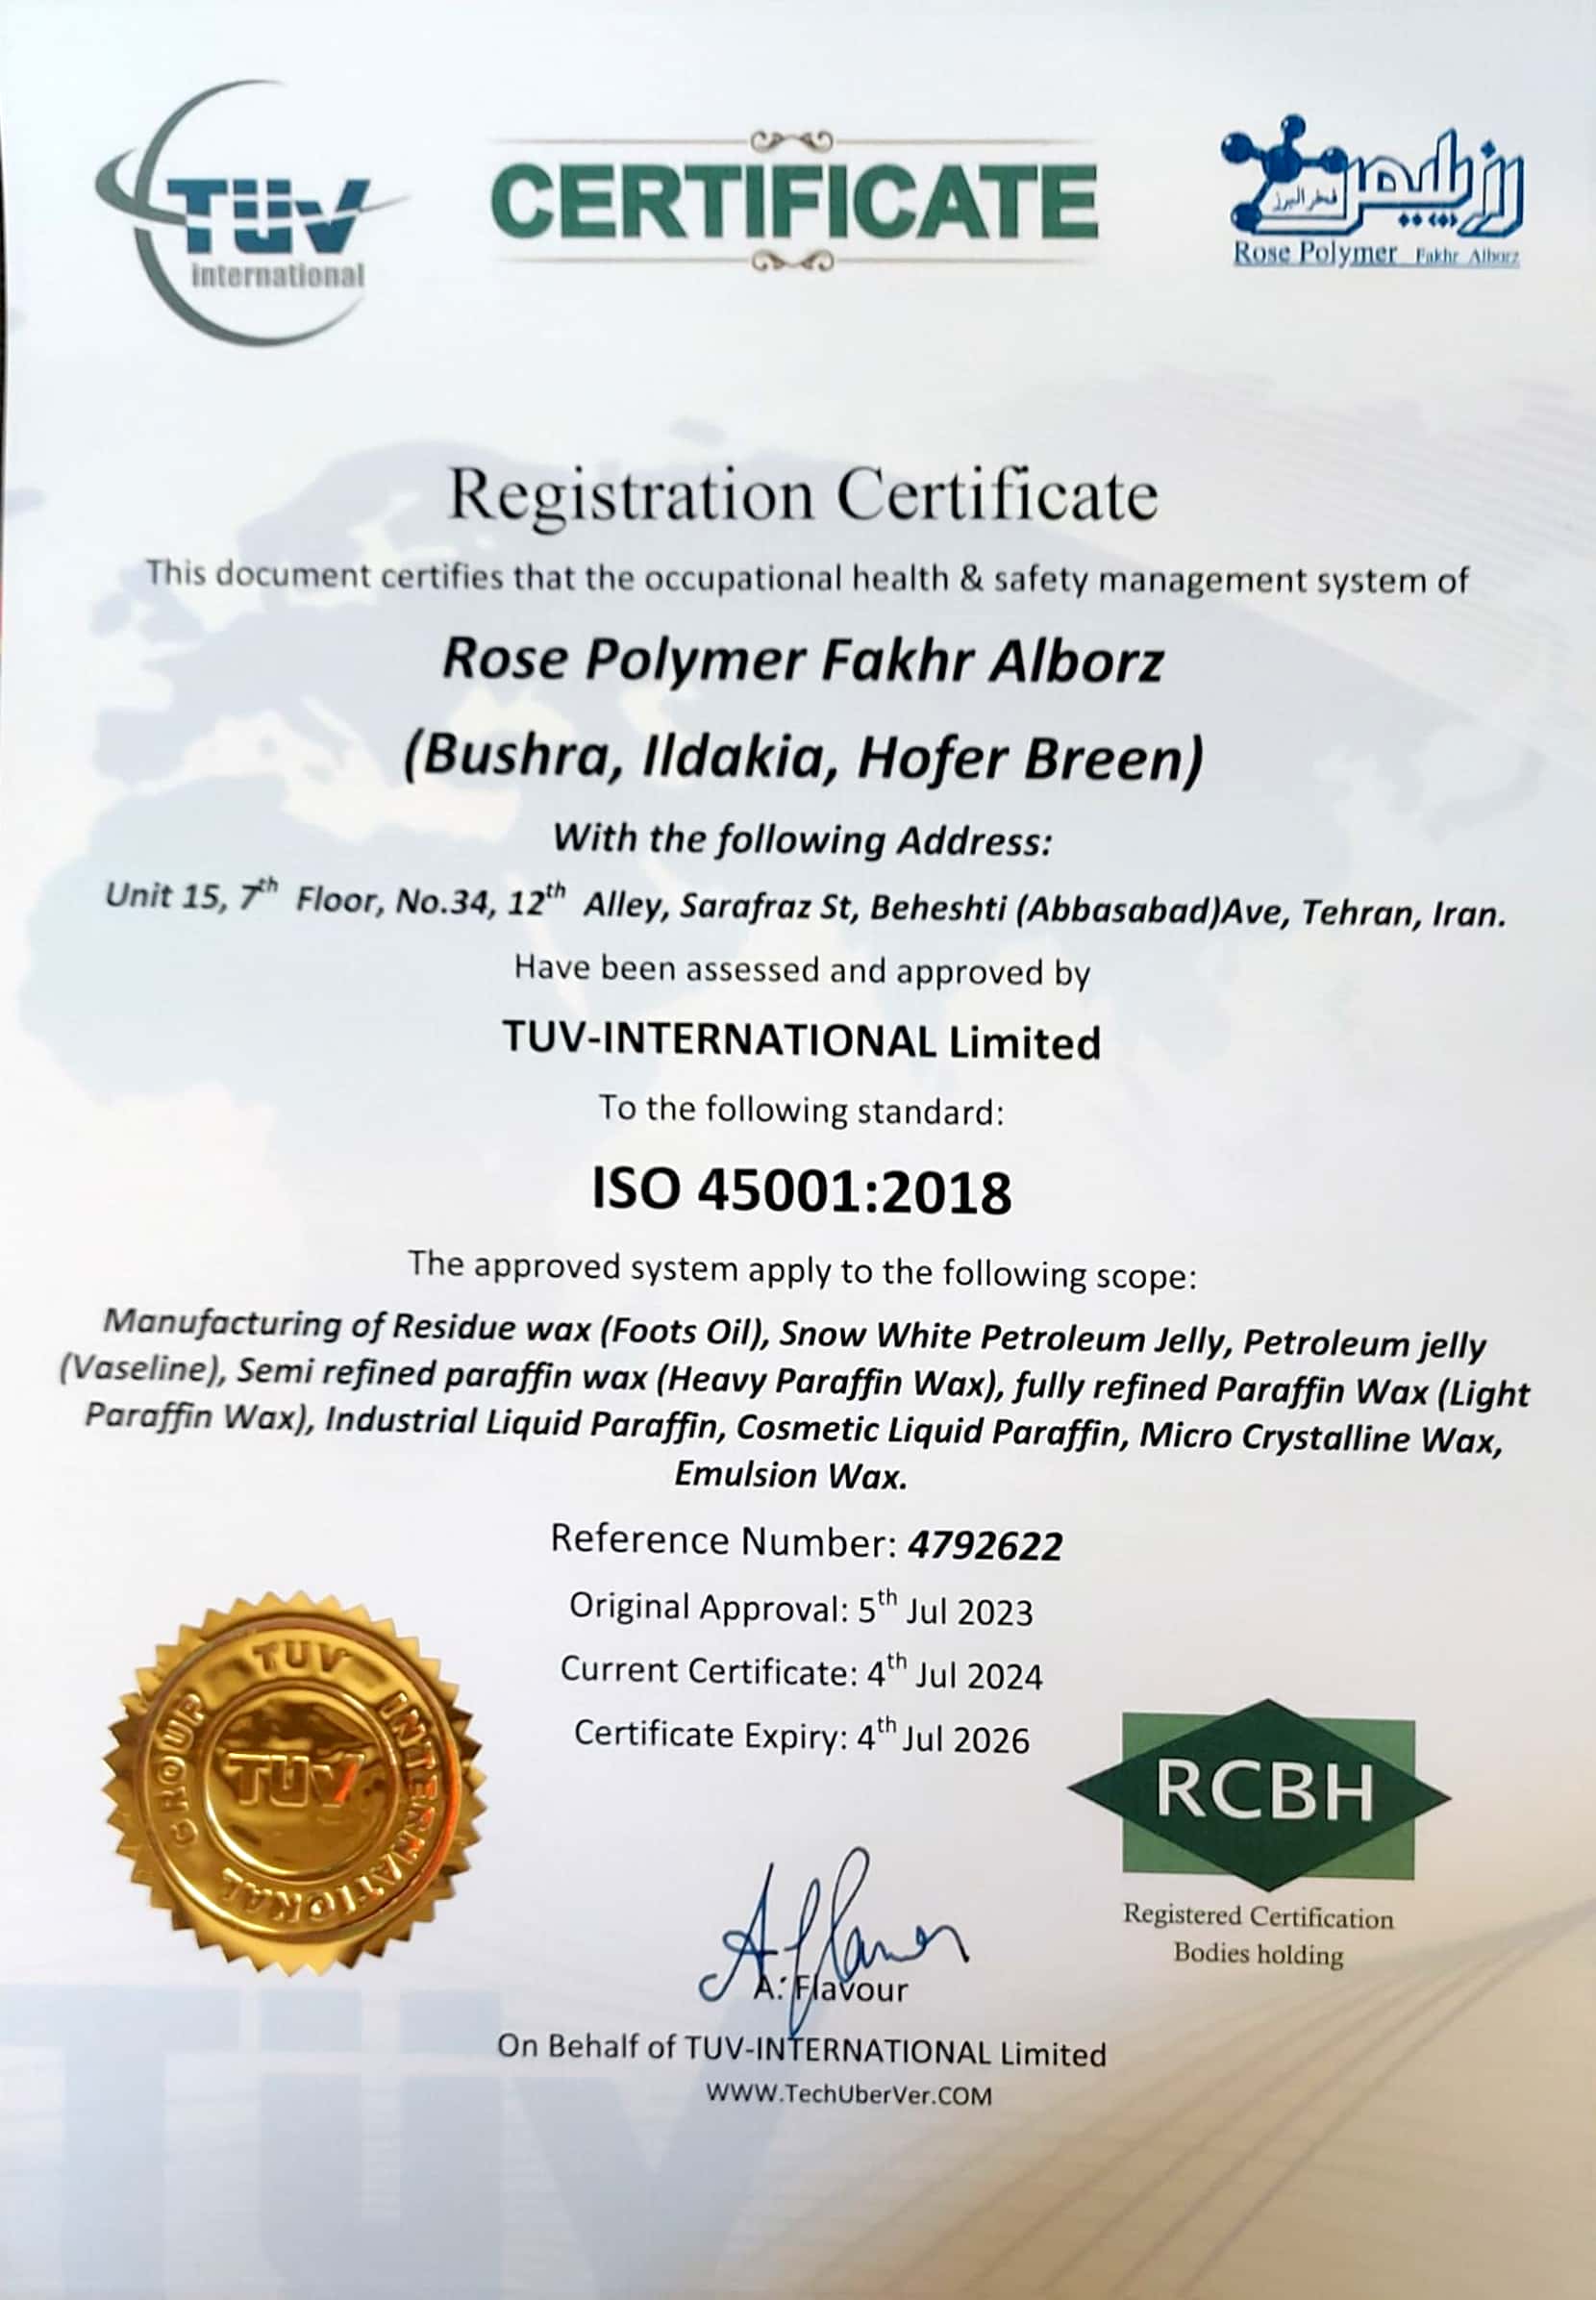 شرکت تولیدی رز پلیمر فخر البرز تولید کننده انواع محصولات پارافین و پلیمر در ایران- گواهینامه ISO 45001